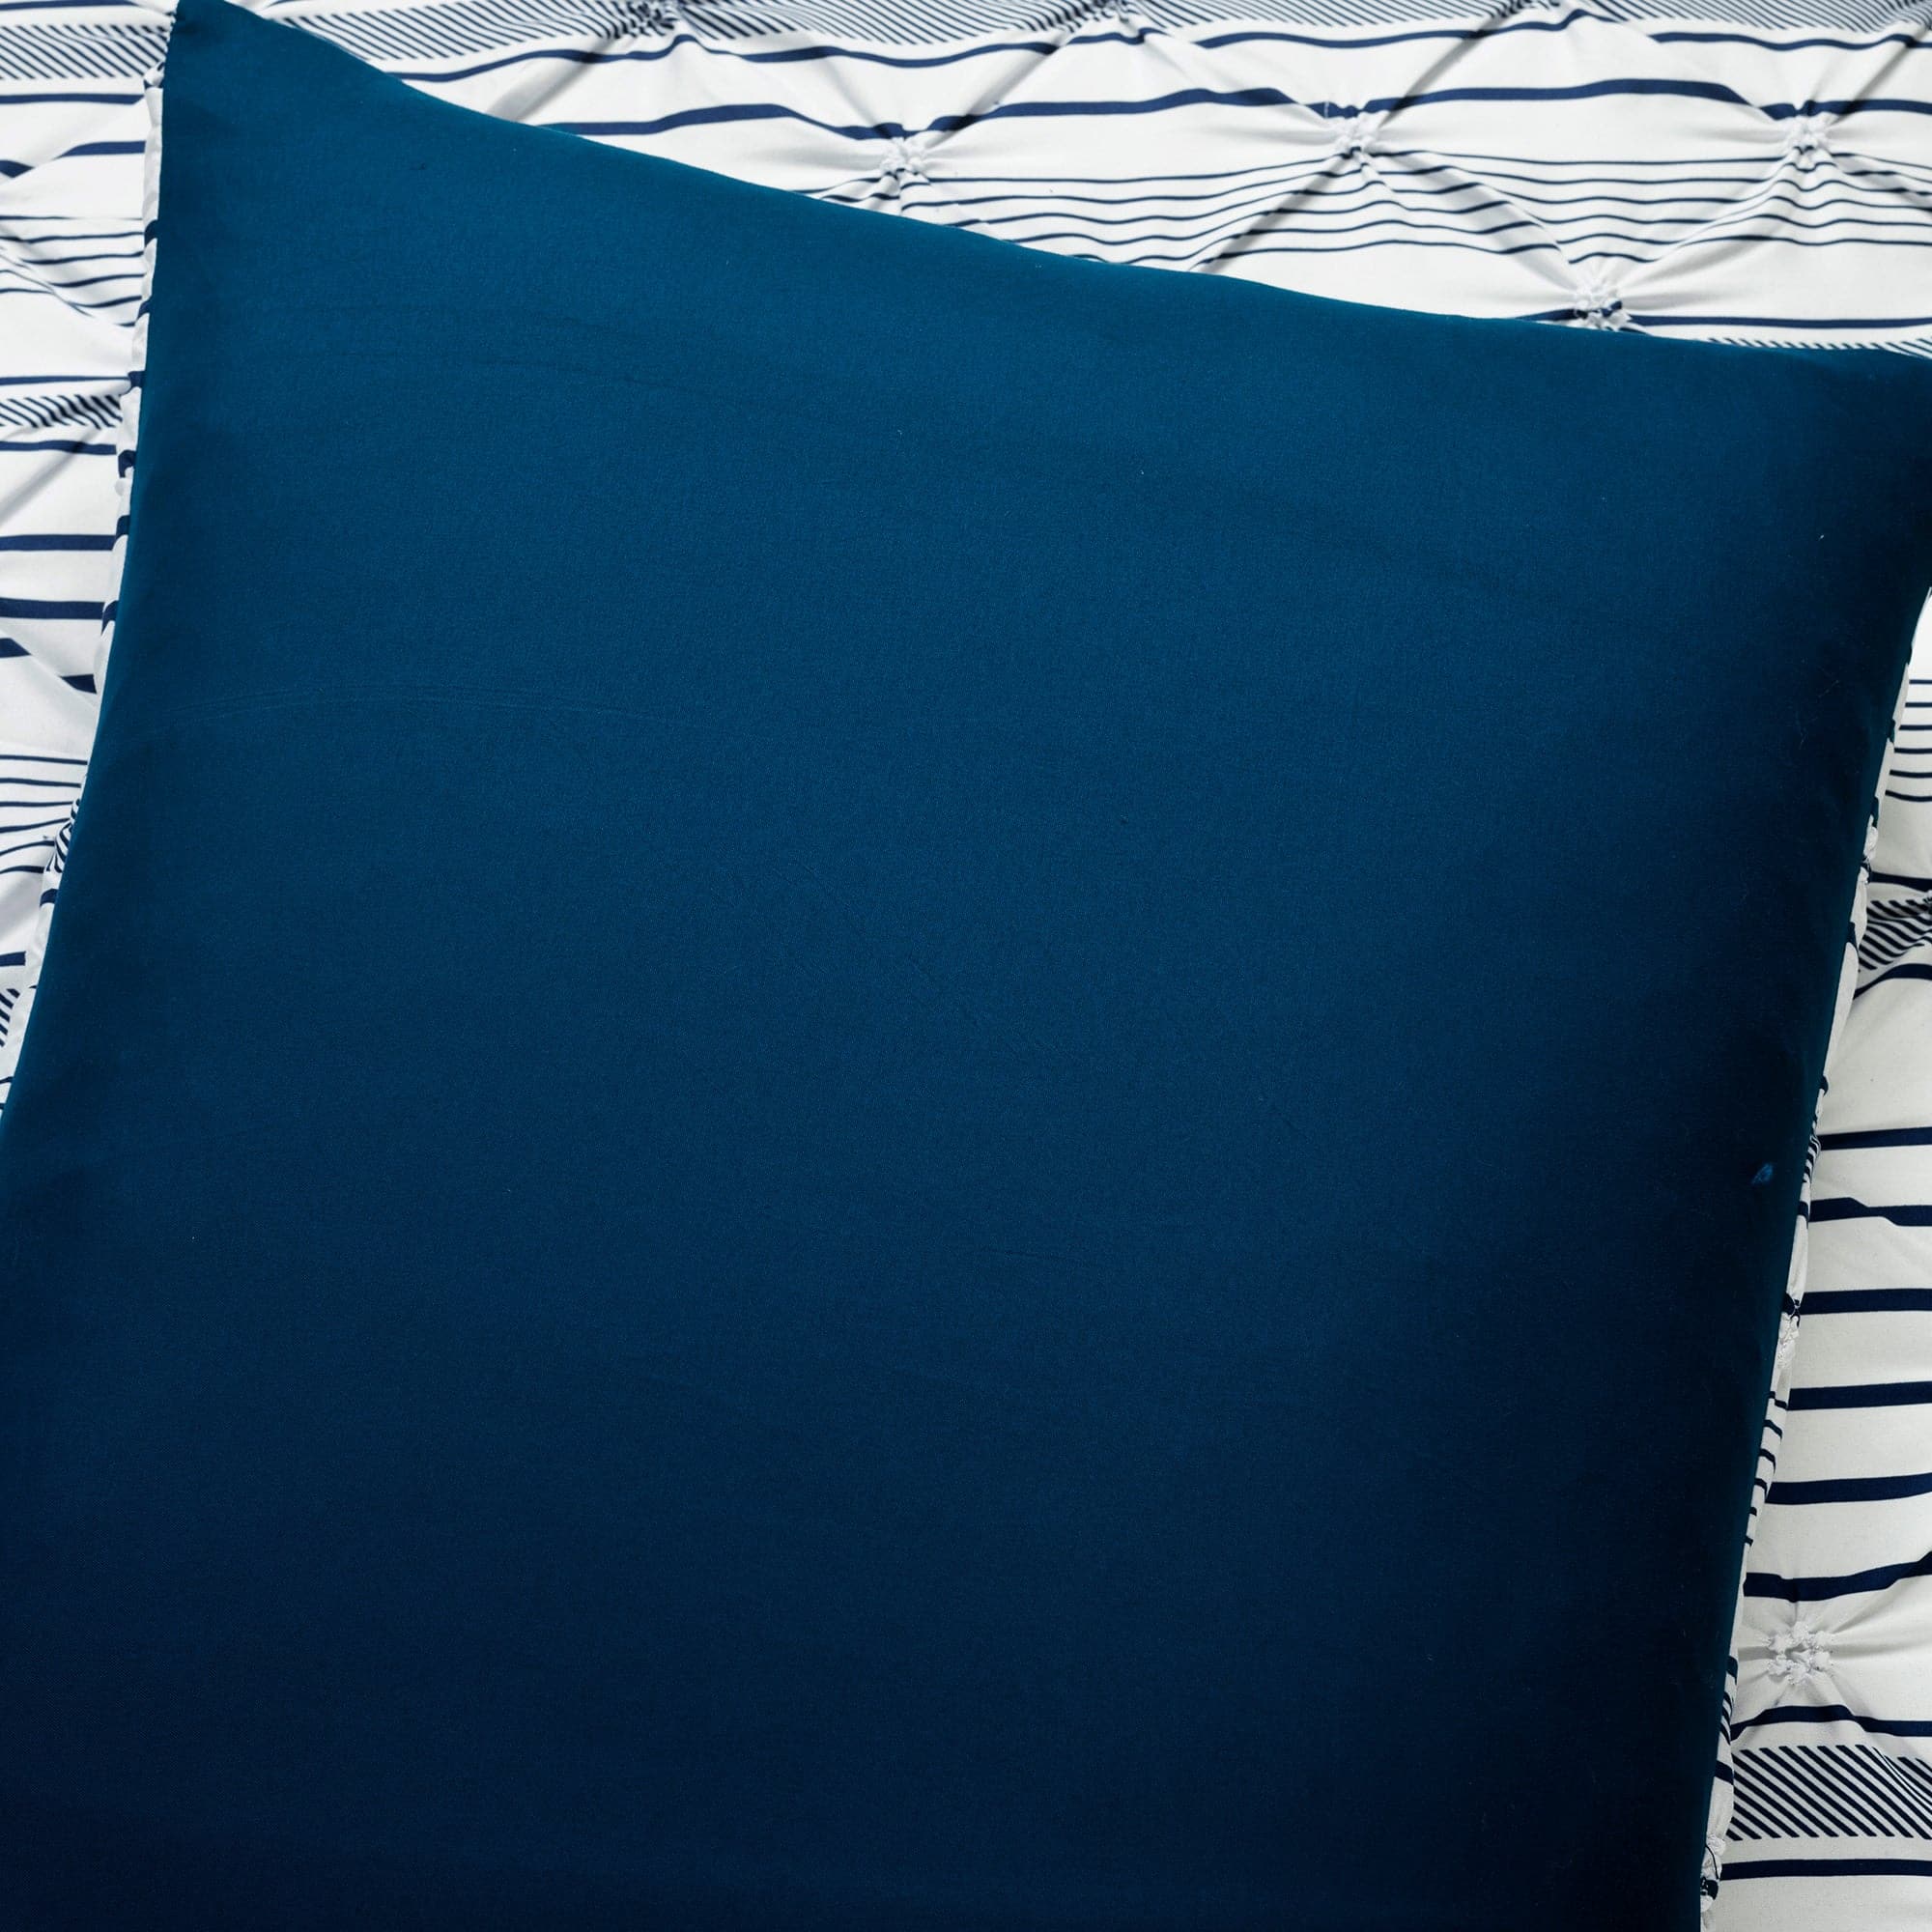 Navy Blue Pintuck Throw Pillow